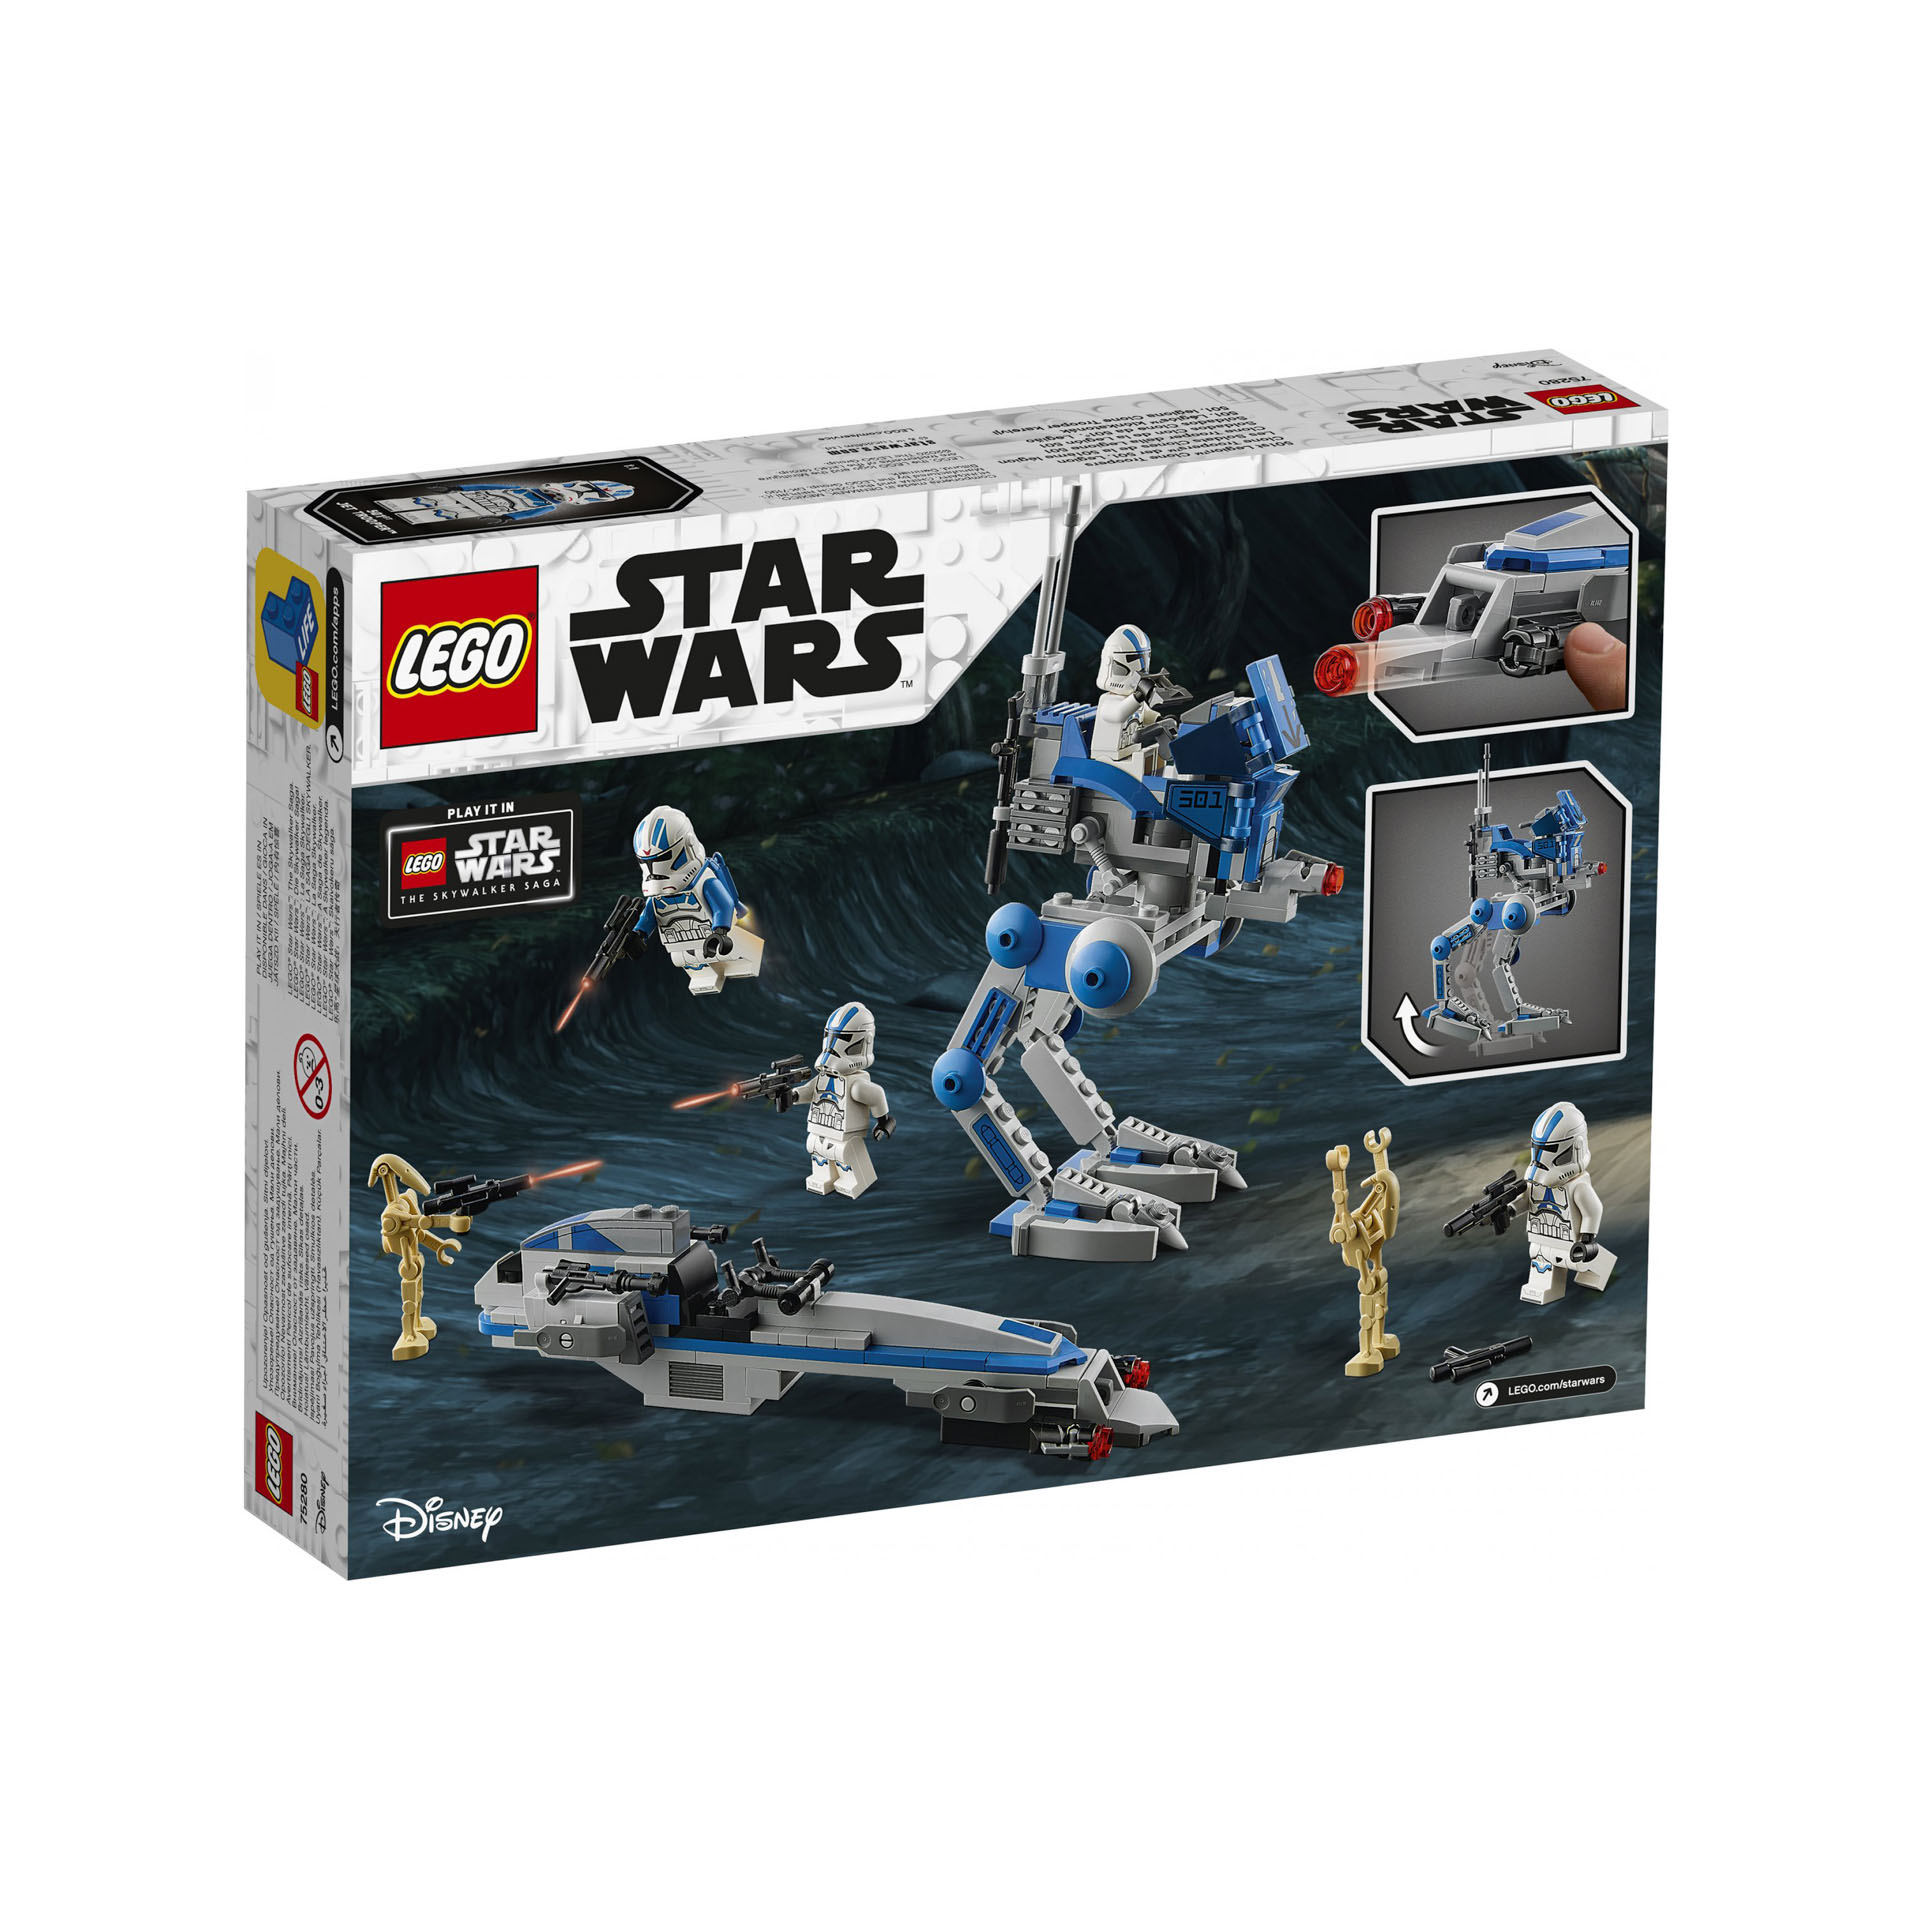 LEGO Star Wars Clone Trooper della Legione 501 Walker AT, BARC Speeder e Droidi  75280, , large